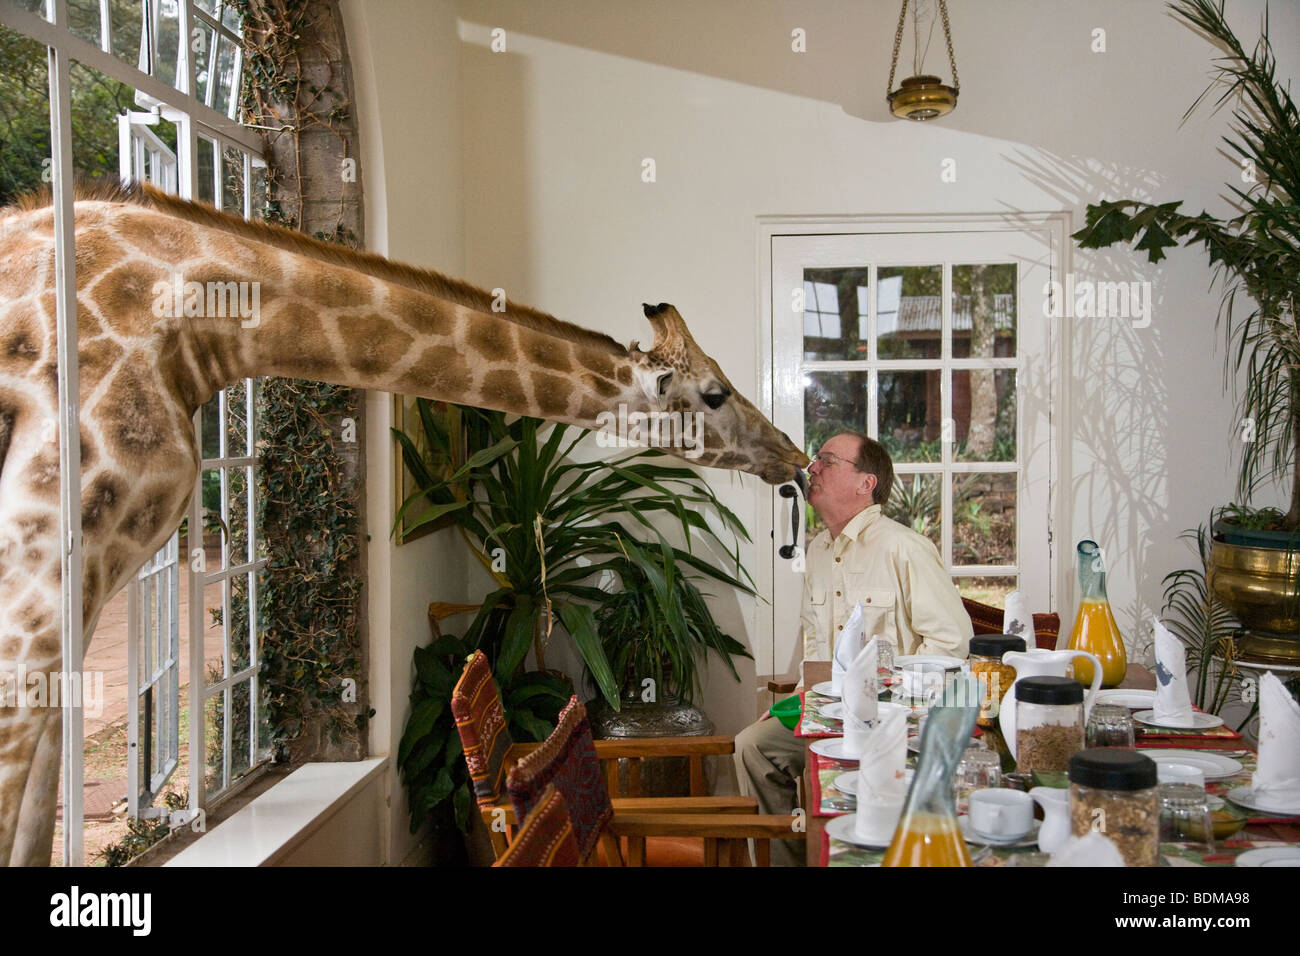 Manoir de la faune Girafe Girafe affectueuse de l'expérience de vacances à travers la vitre, petit-déjeuner partage l'homme embrasse au petit déjeuner en vacances Nairobi Kenya Banque D'Images